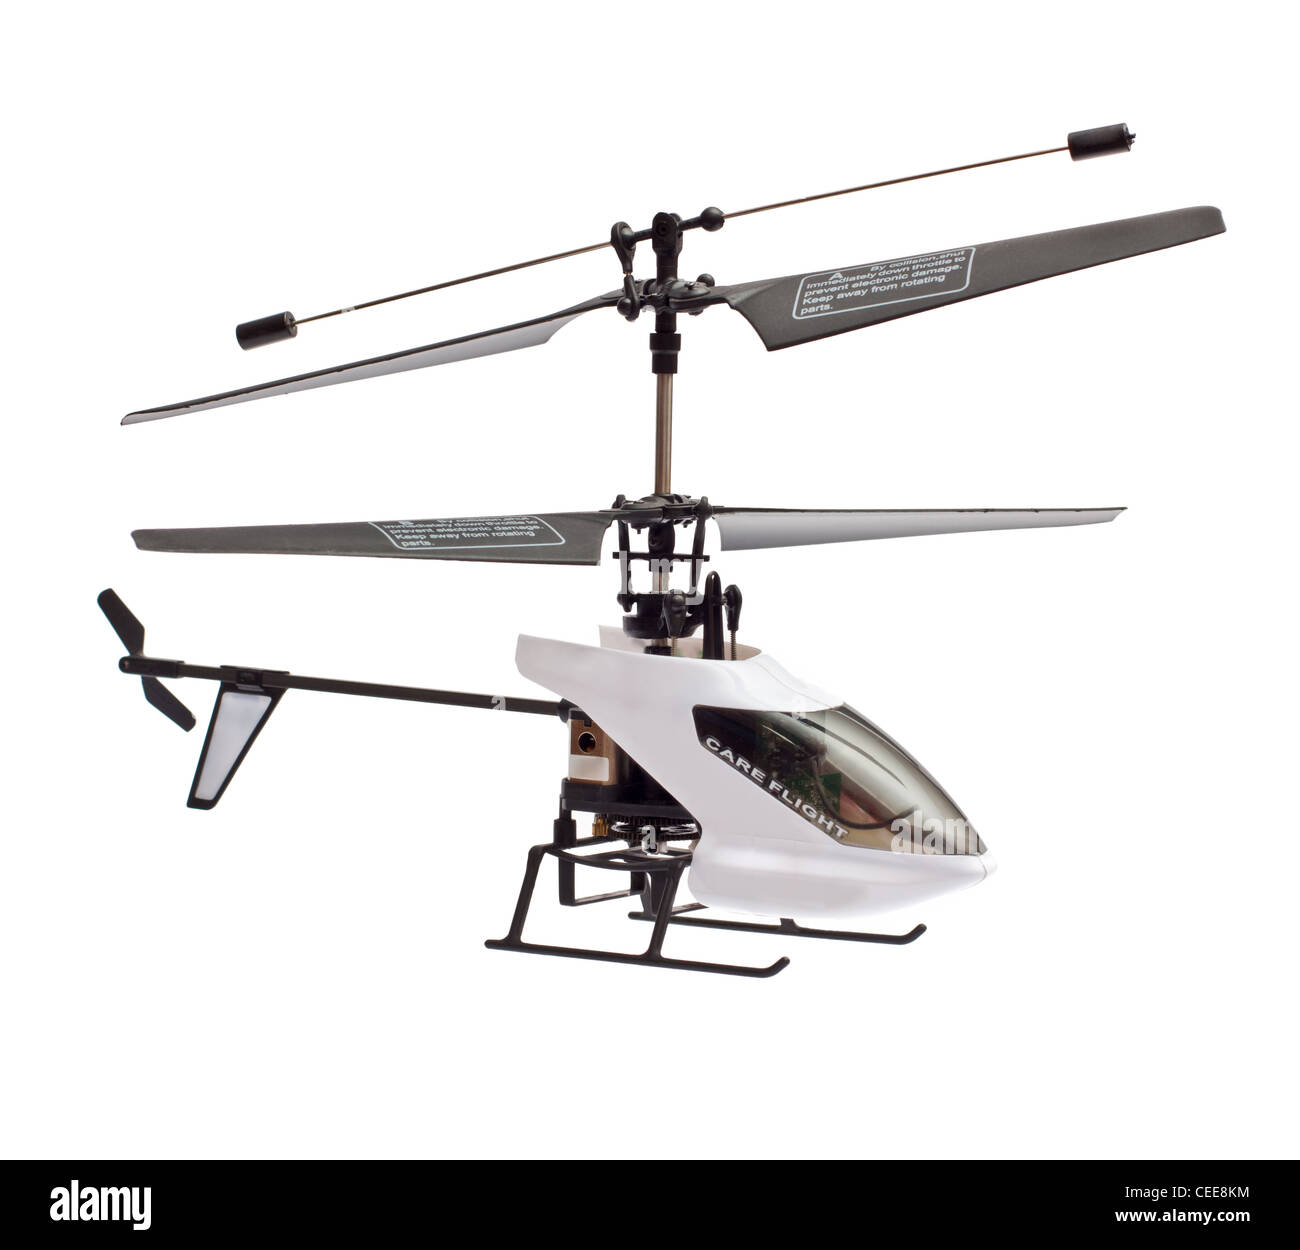 Modello di radio-controllato elicottero isolato su uno sfondo bianco Foto Stock